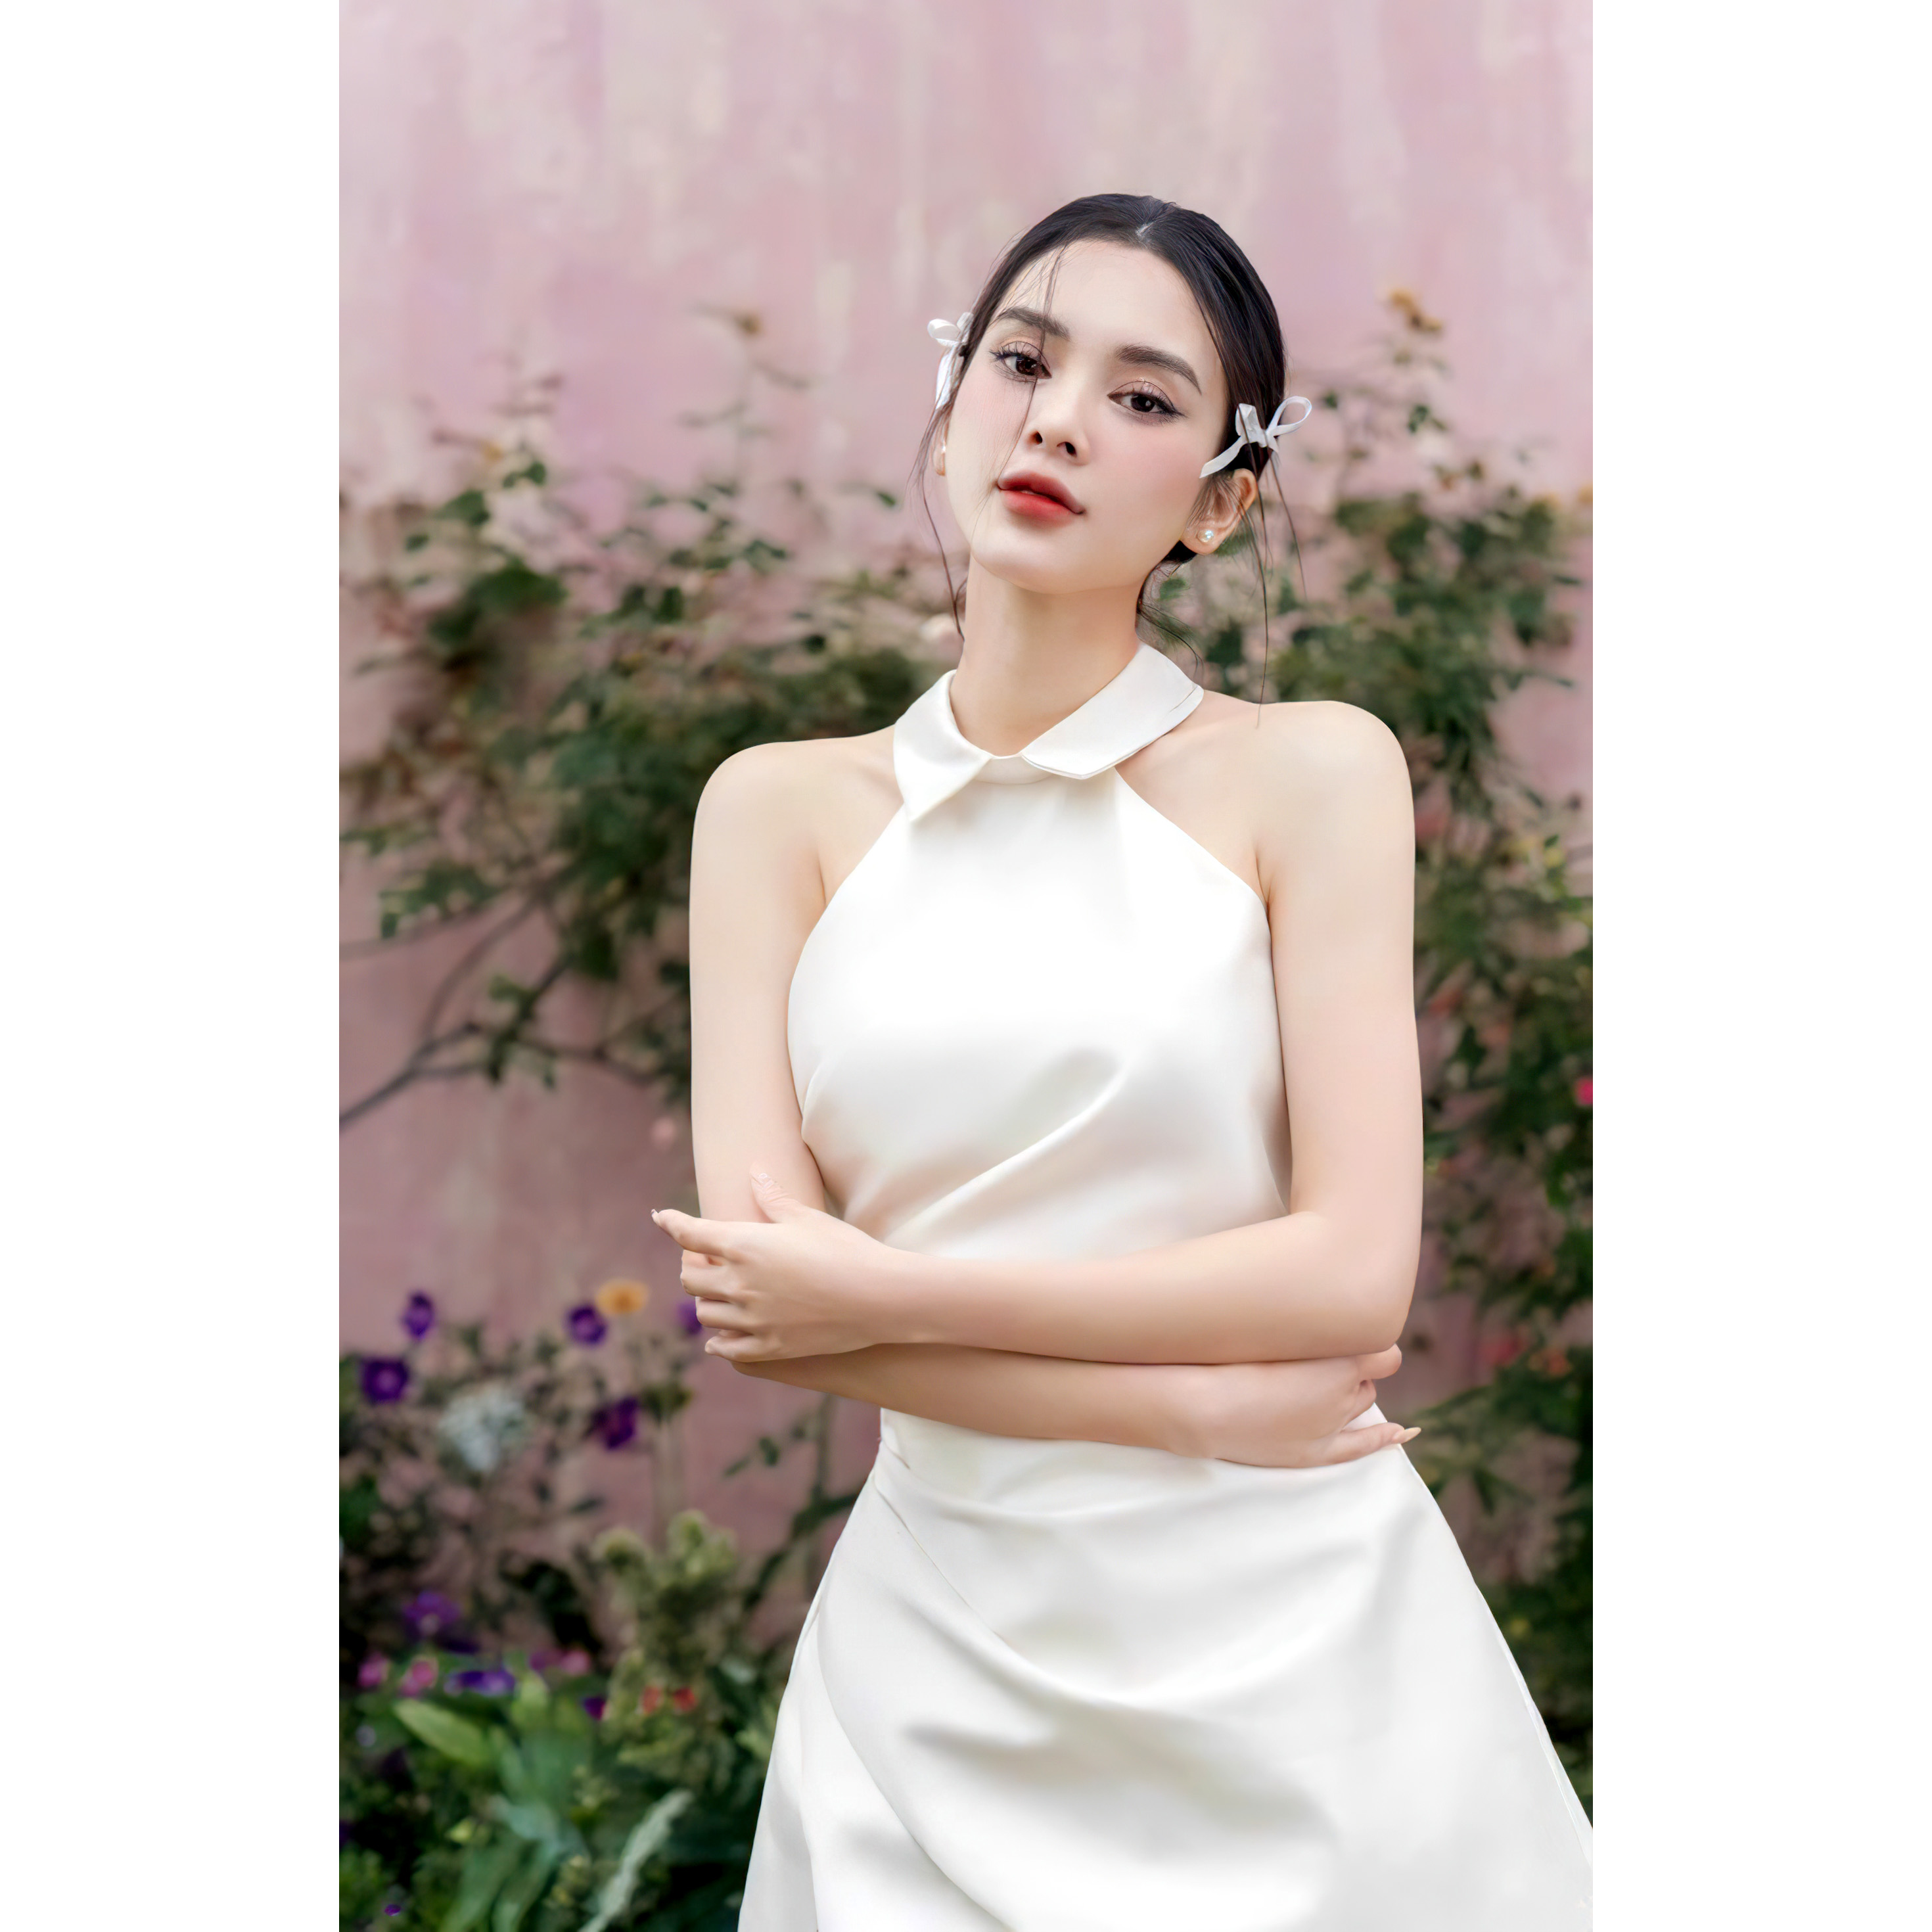 Đầm nữ thiết kế cổ lọ thương hiệu Đầm Váy Mina chất liệu Cotton cao cấp - MN233